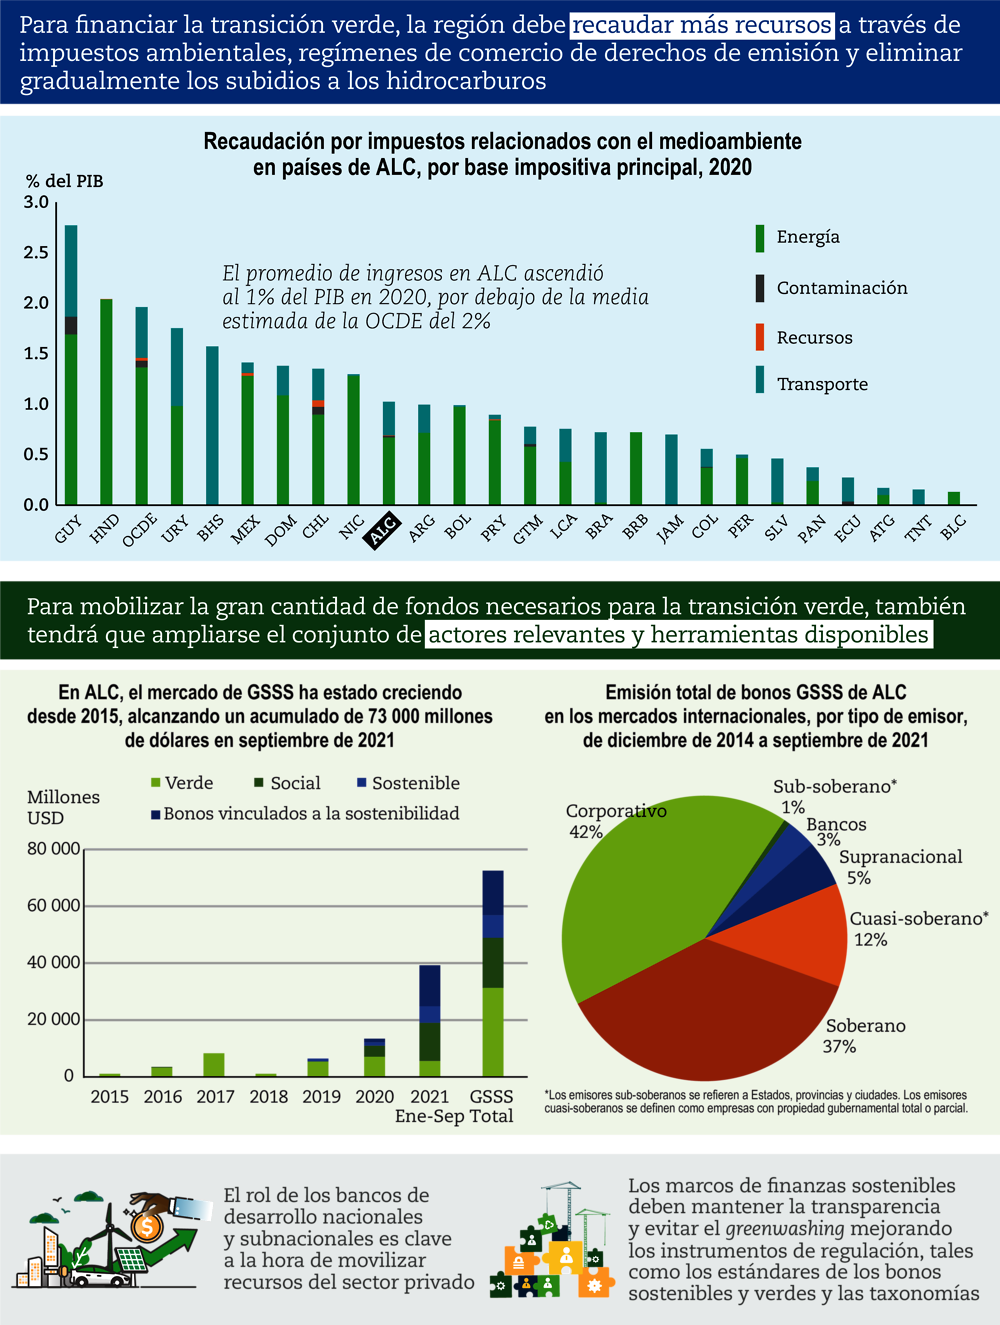 Tanto el sector público como el privado son necesarios para financiar la transición verde en ALC (infographic)